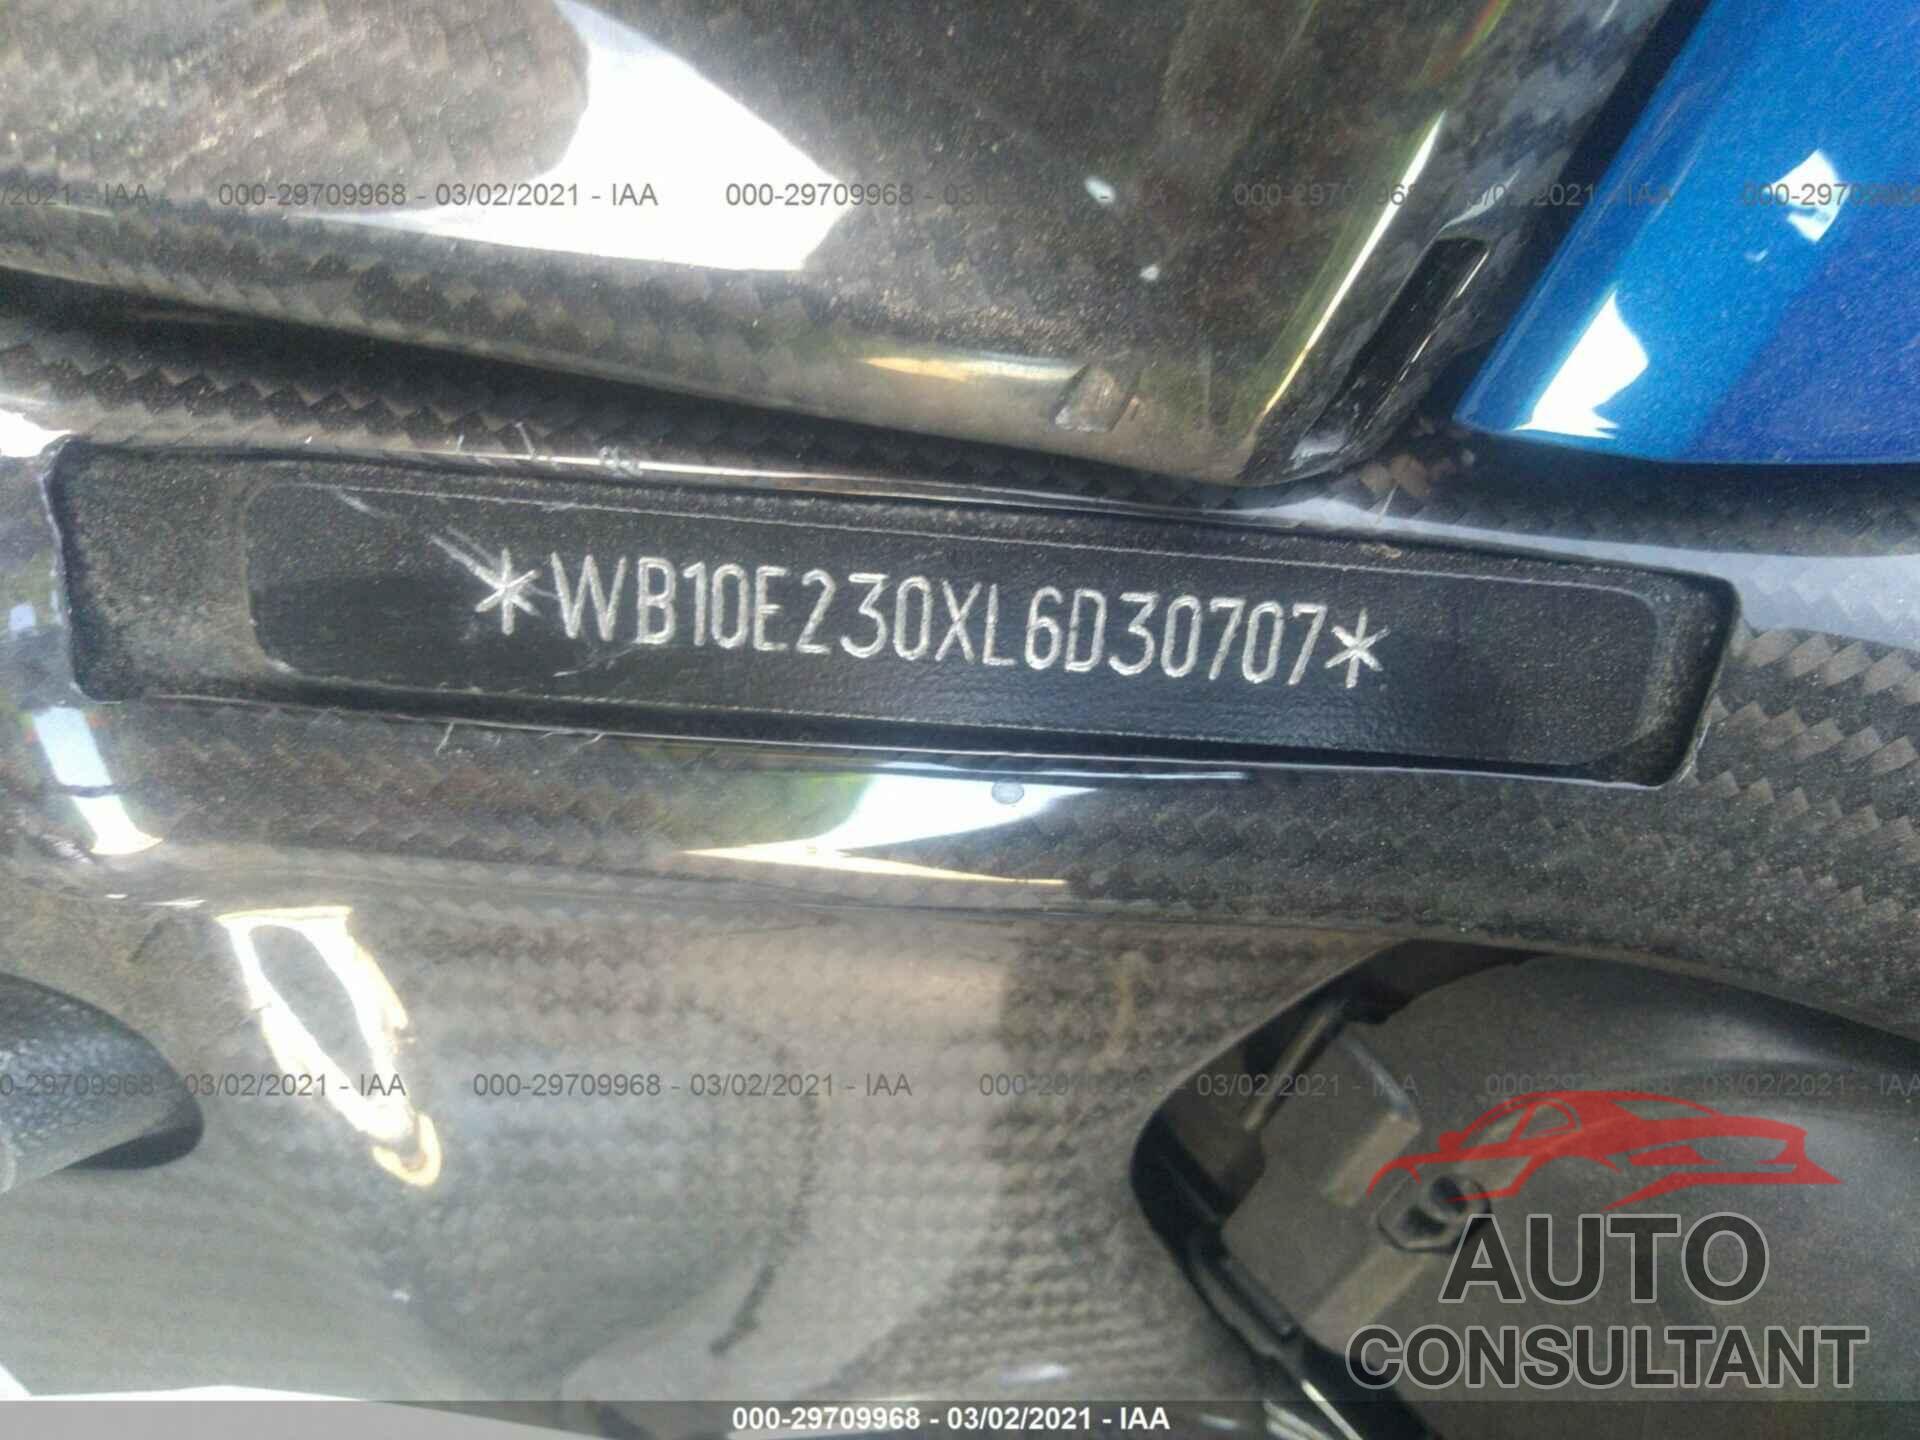 BMW S 1000 2020 - WB10E230XL6D30707